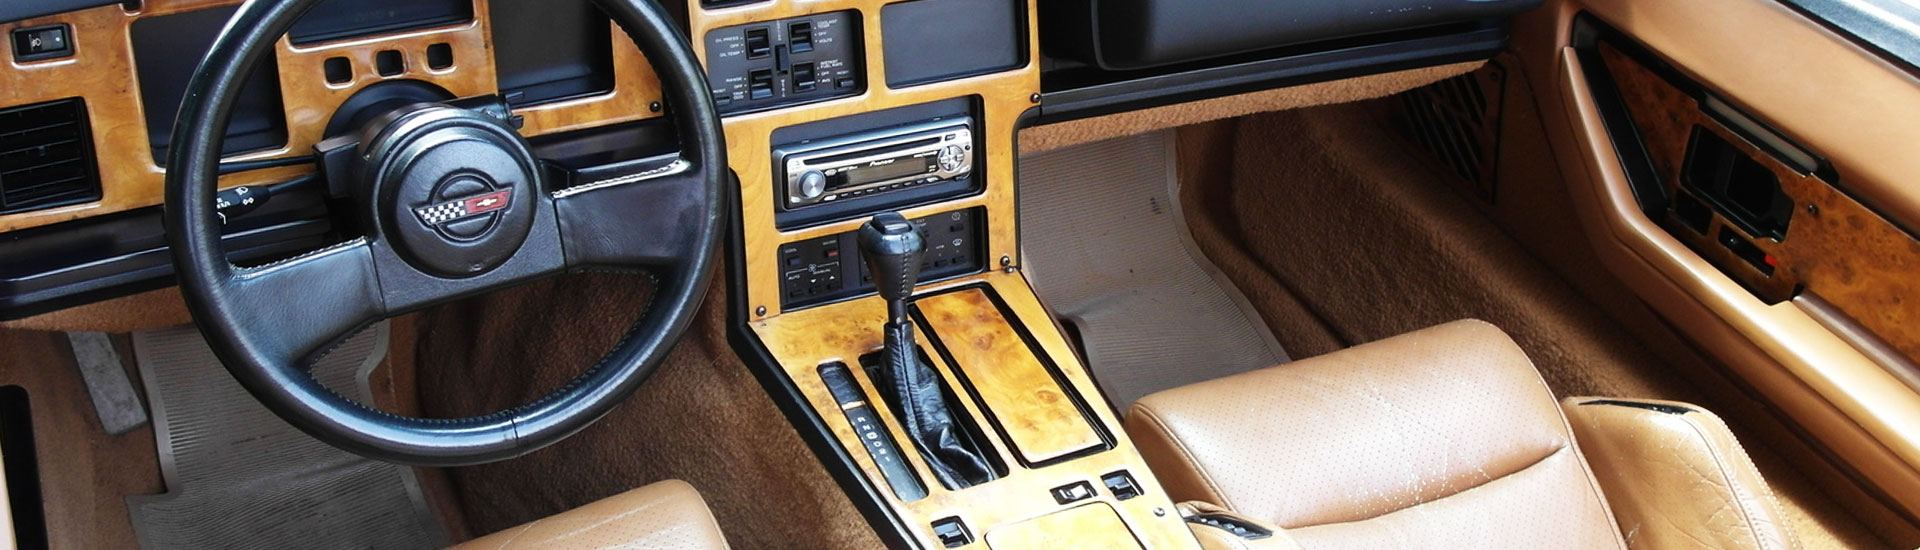 1988 Chevrolet Corvette Dash Kits